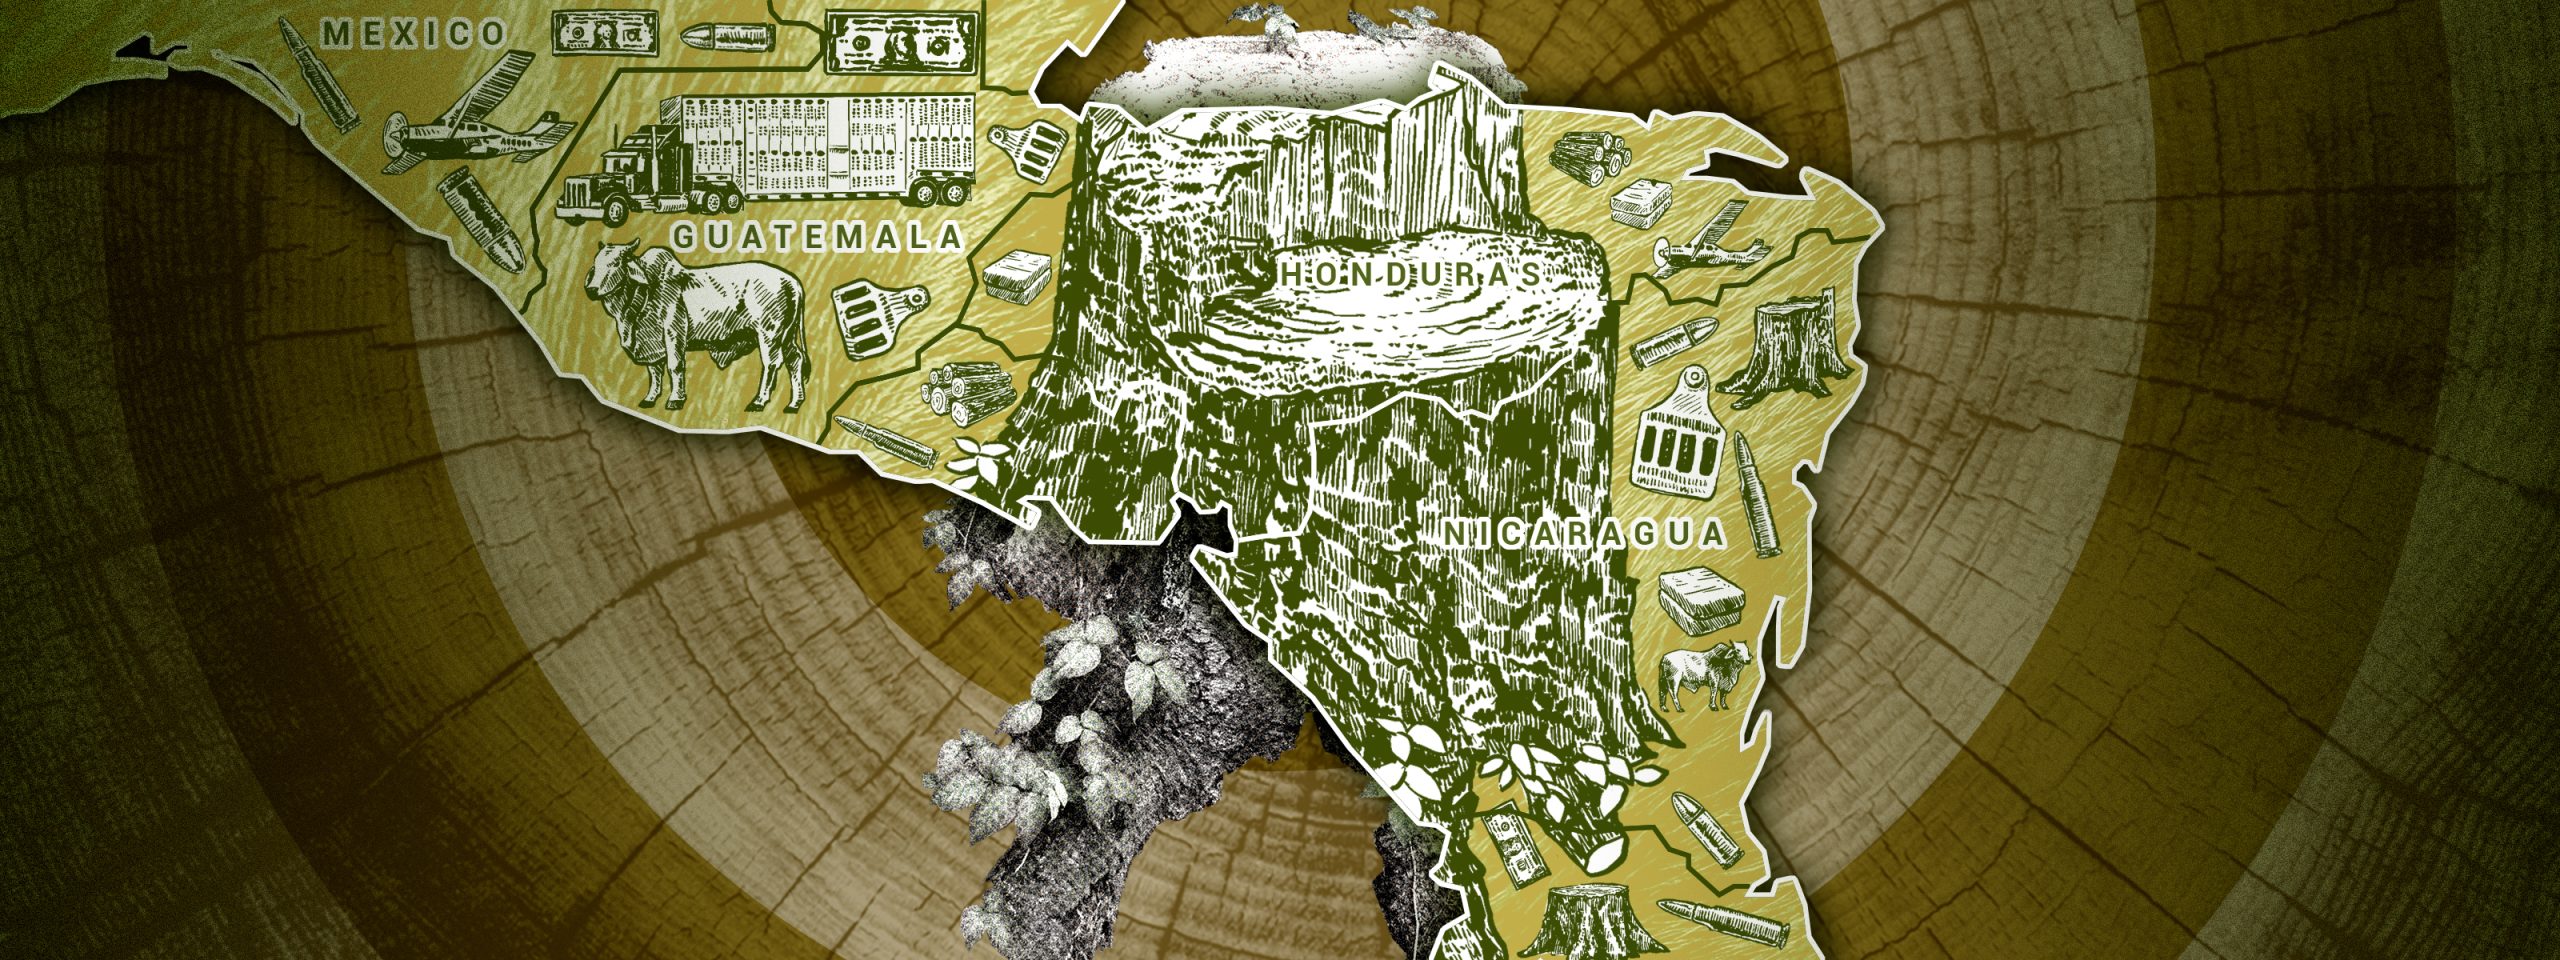 Ilustración del mapa de Centroamérica junto a imágenes de ganado